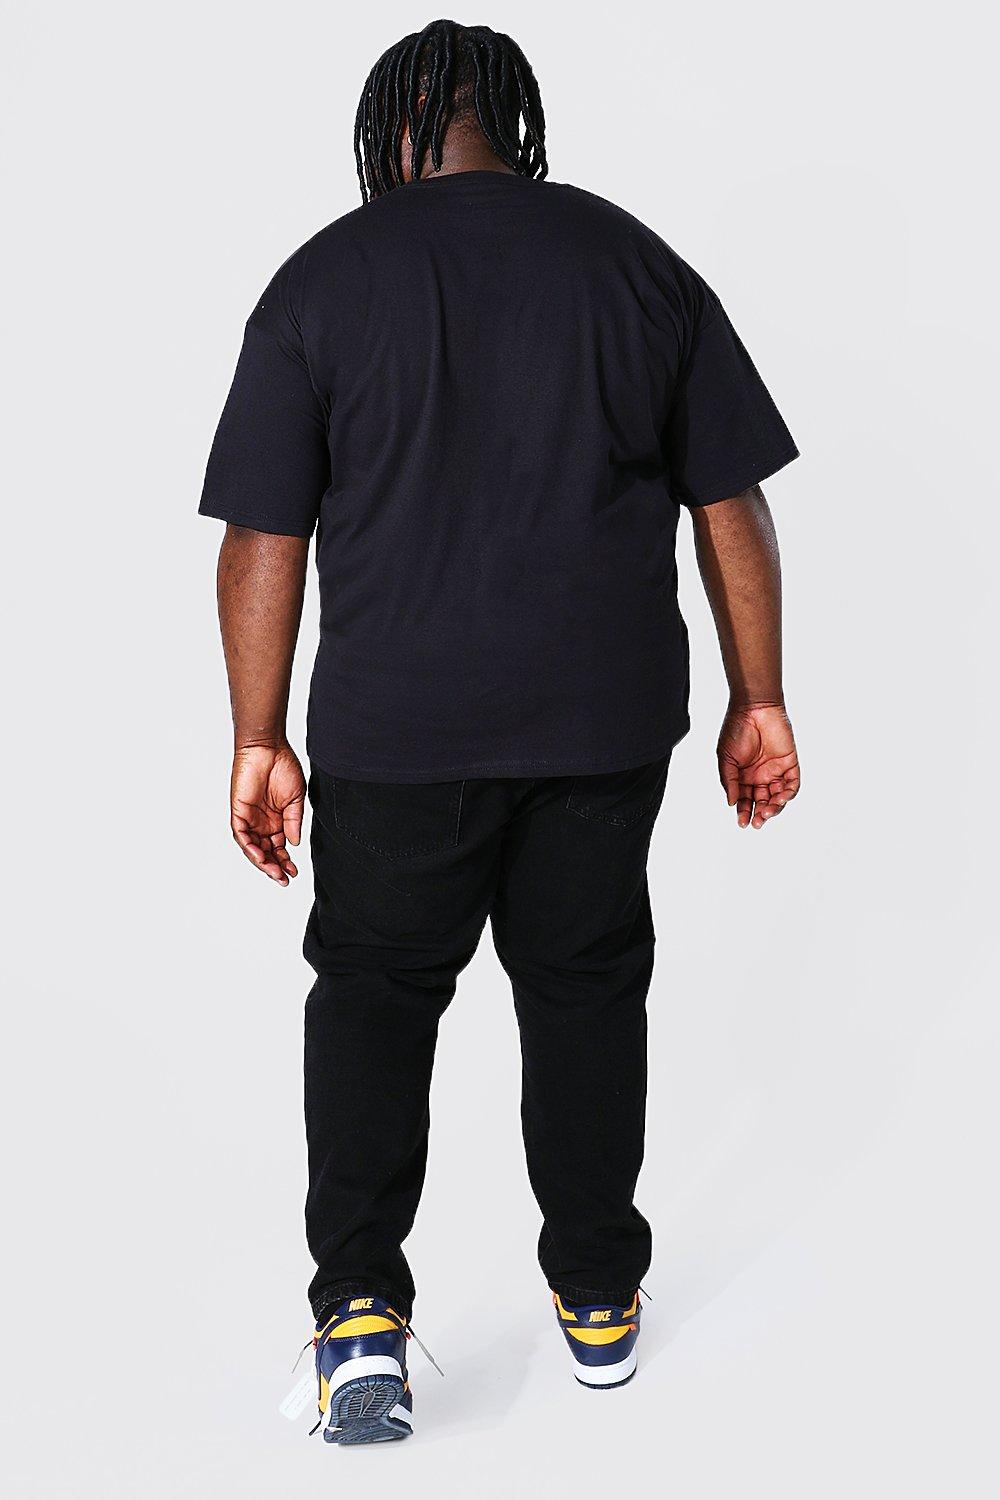 Men's Plus Size Def Leppard License T-shirt